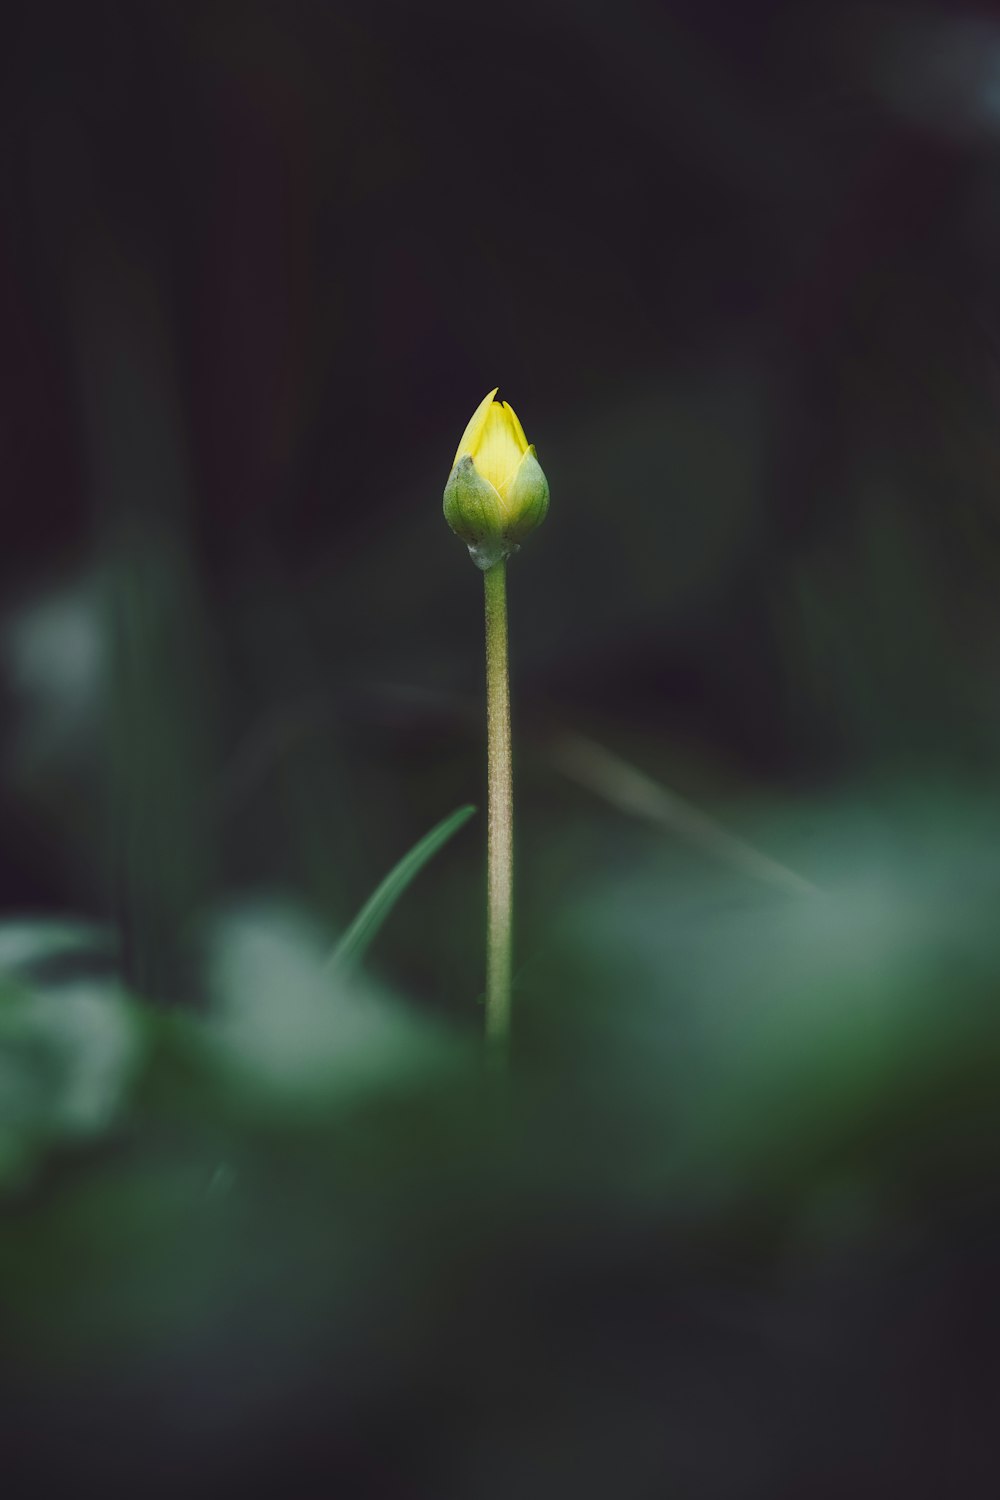 yellow flower bud in tilt shift lens